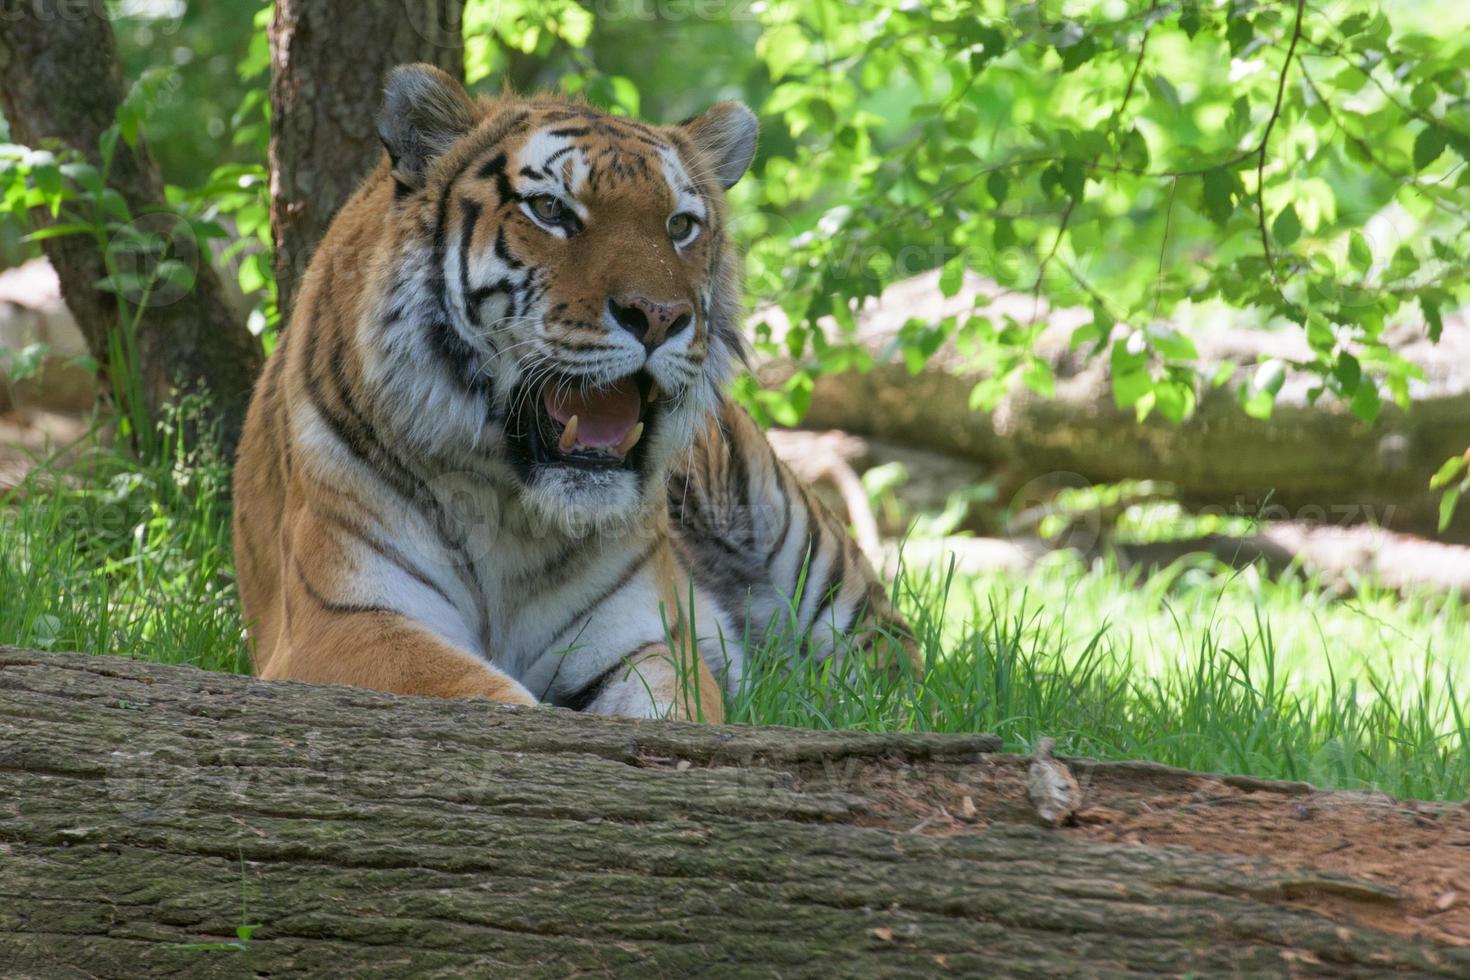 tigre de sibérie prêt à attaquer en vous regardant photo